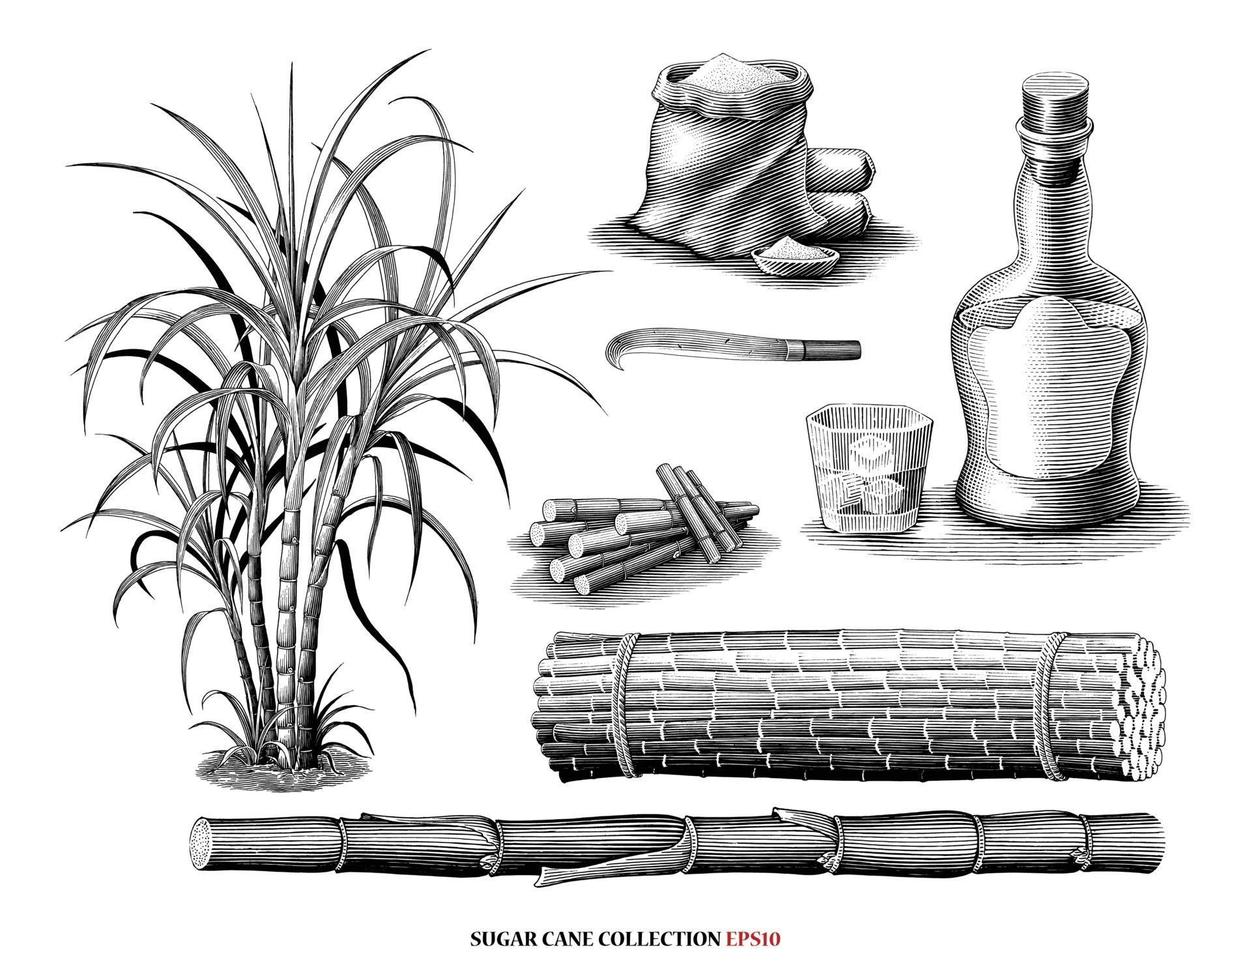 árvore de cana-de-açúcar com coleção de produtos ilustração estilo vintage gravura arte em preto e branco isolado no fundo branco vetor